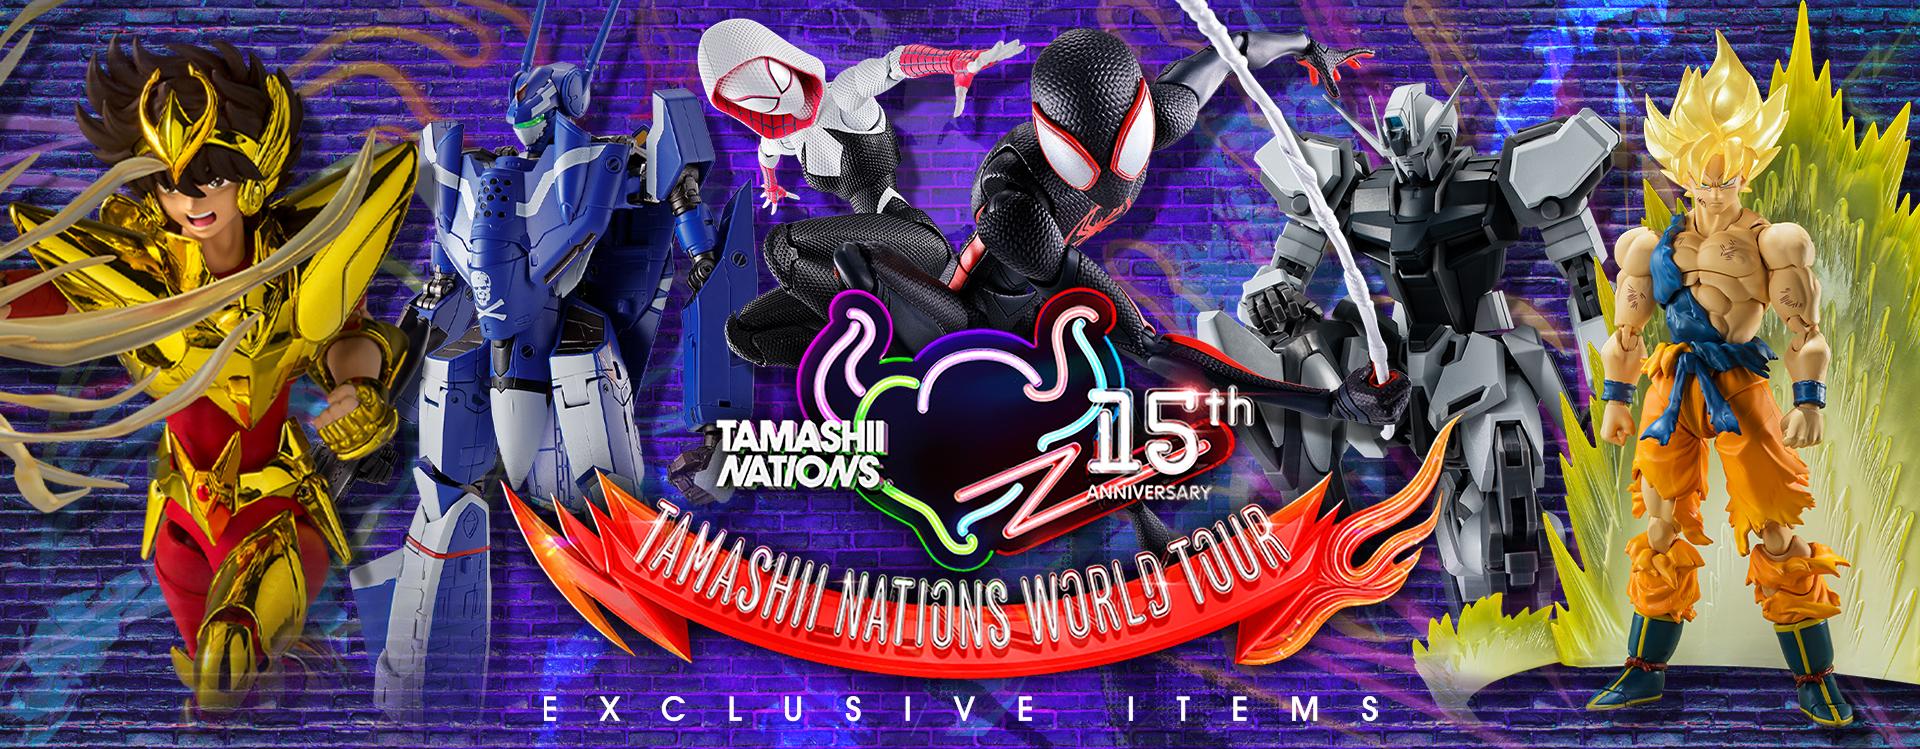 Tamashii Nations World Tour 15th Anniversary